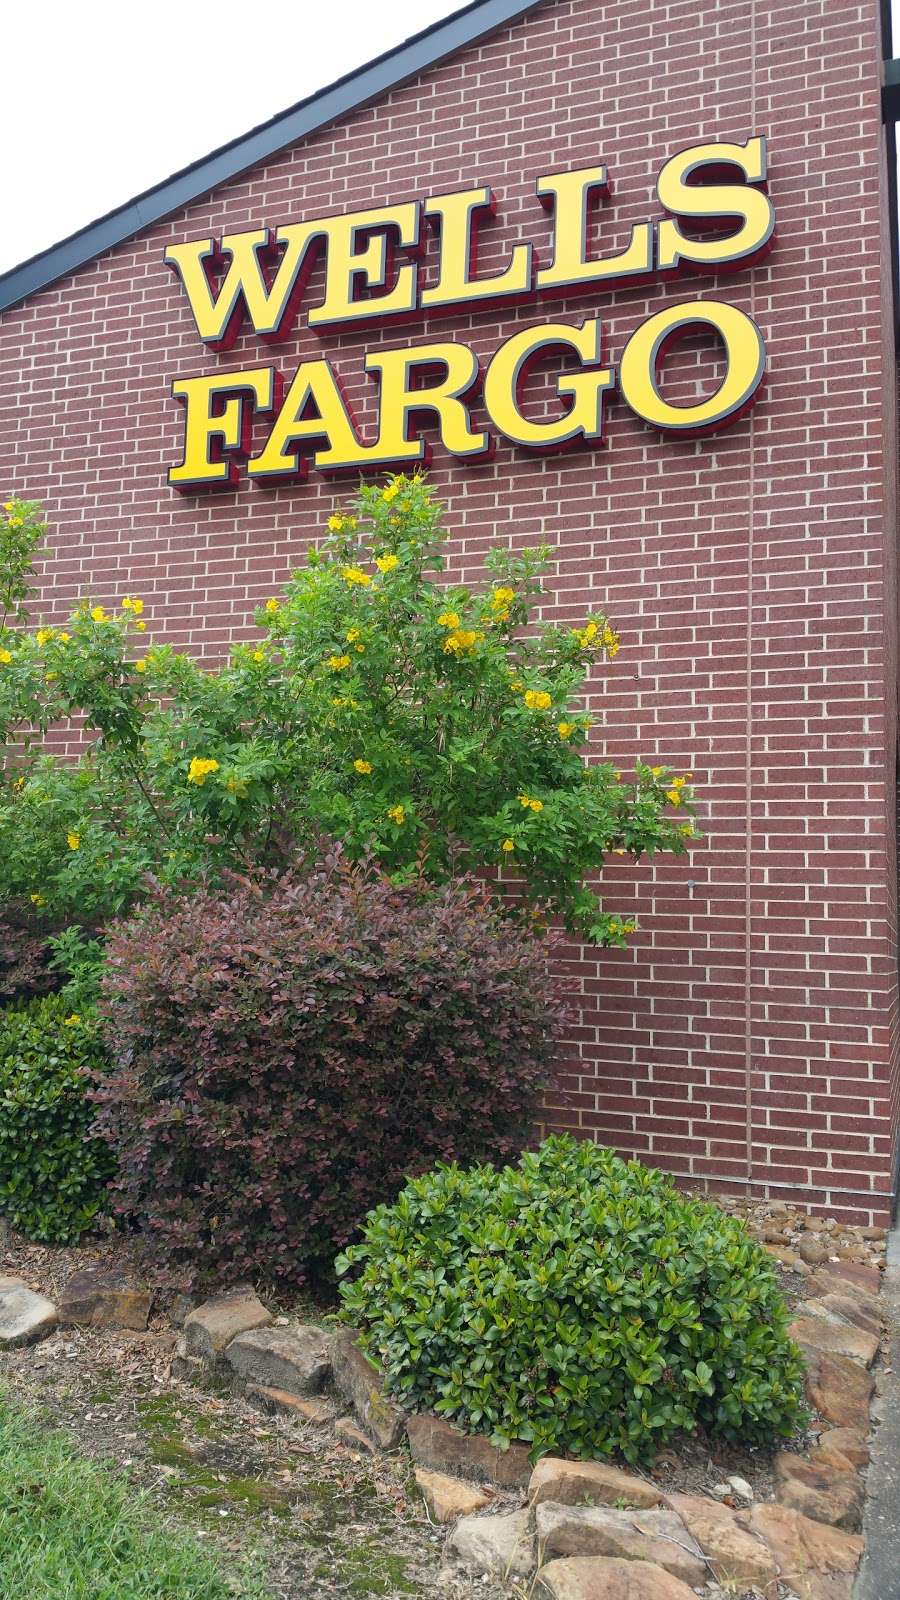 Wells Fargo Bank | 25100 FM 2100, Huffman, TX 77336, USA | Phone: (281) 324-7300